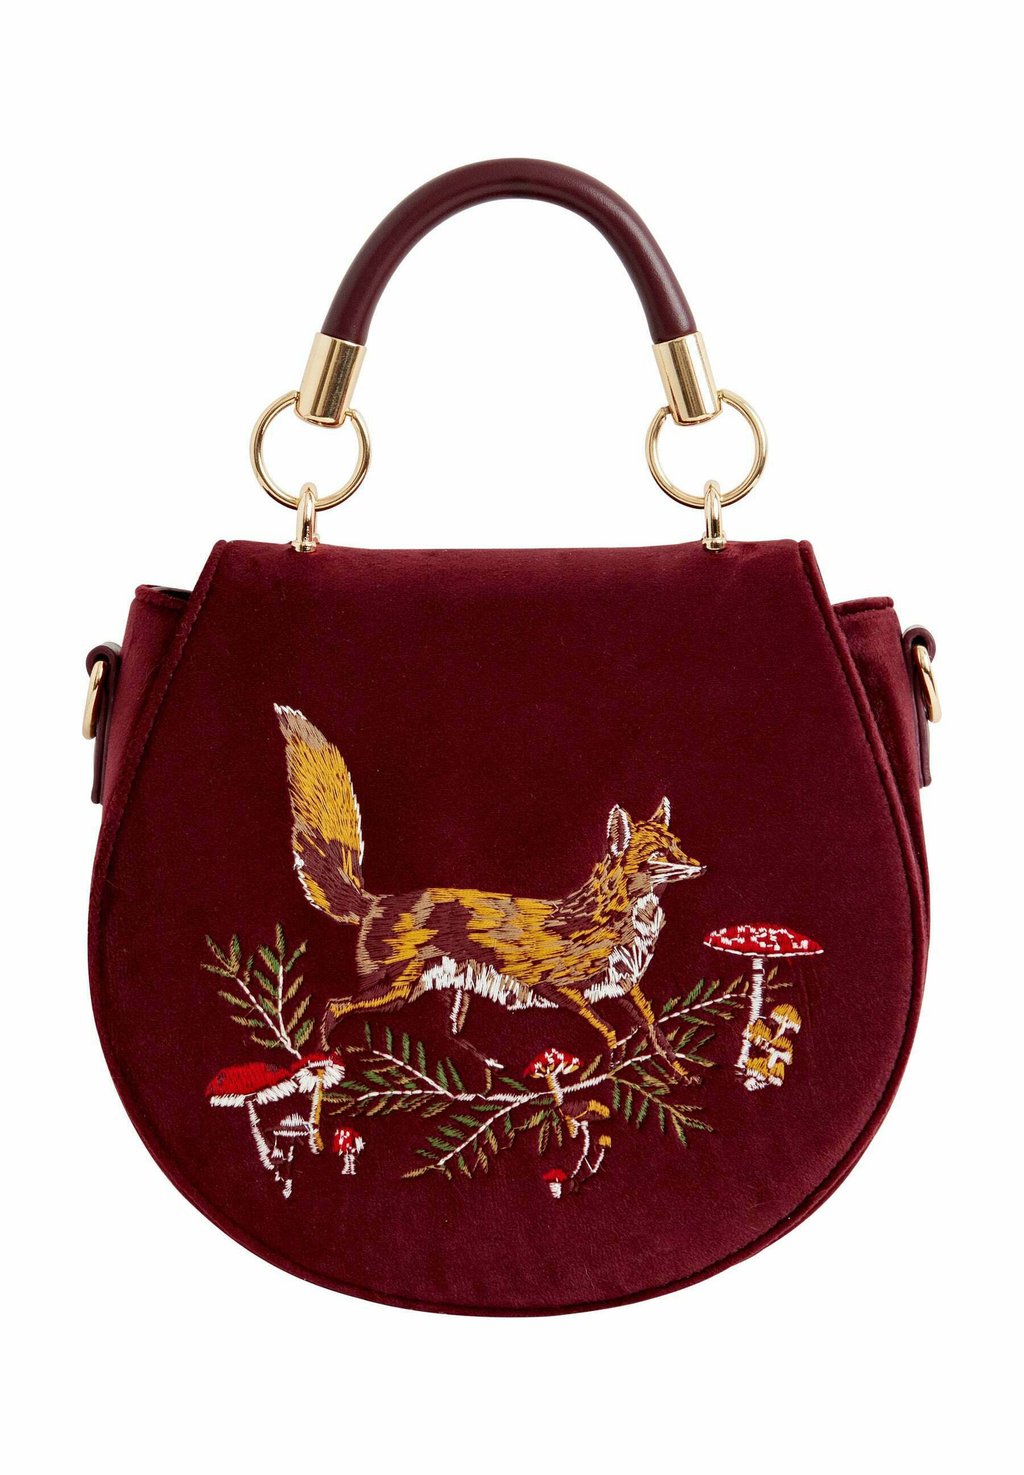 Сумка FOX MUSHROOM EMBROIDERED SADDLE-REDCURRANT FABLE ENGLAND, цвет red сумочка robin love embroidered saddle fable england зеленый